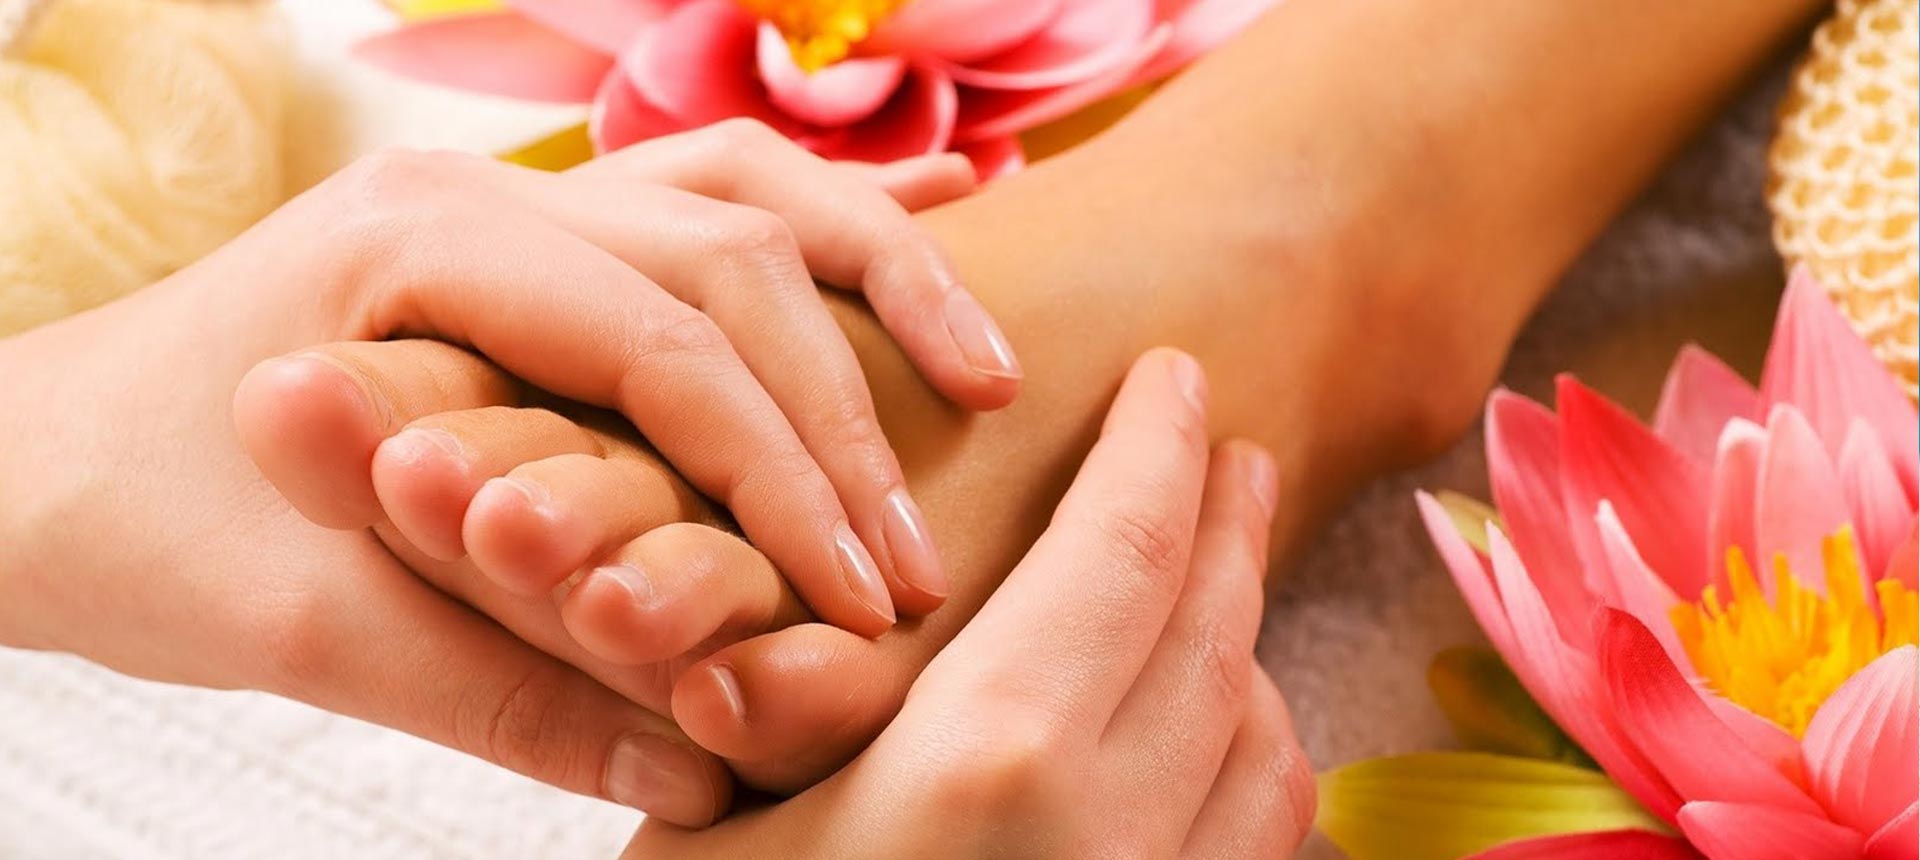 Massaggi – riflessologia plantare – pedicure